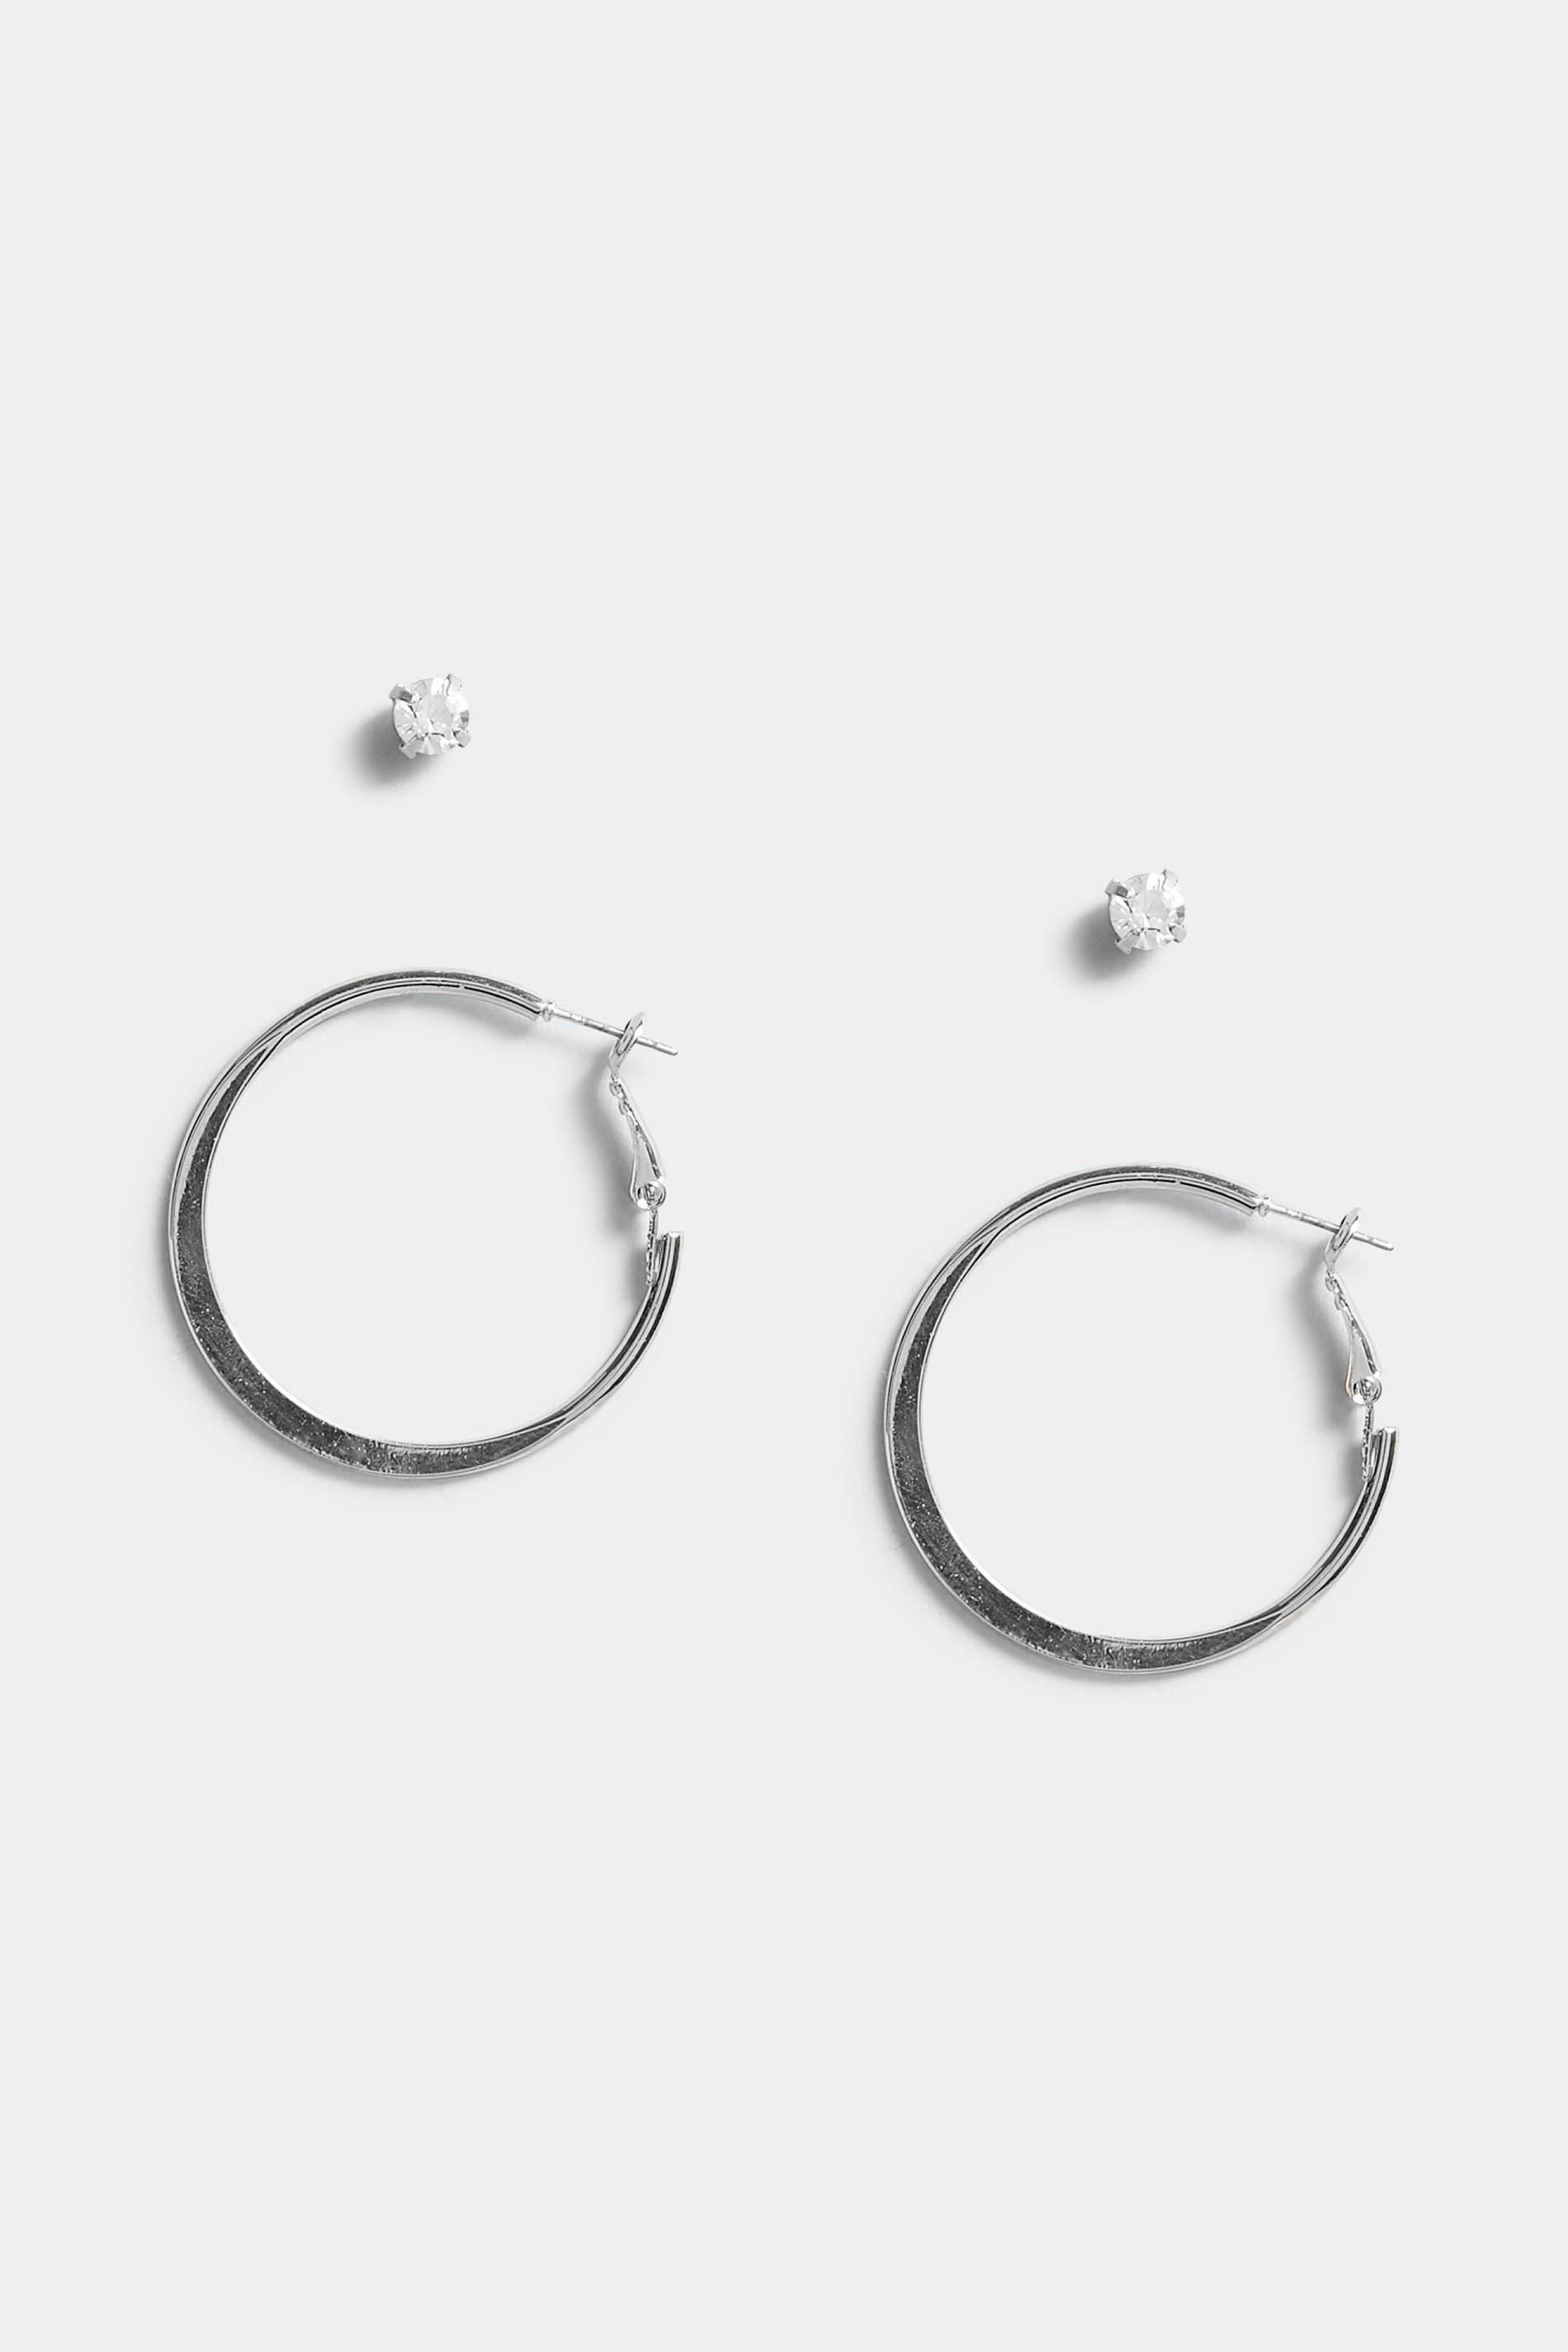 2 PACK Silver Stud Hoop Earrings Set | Yours Clothing 2